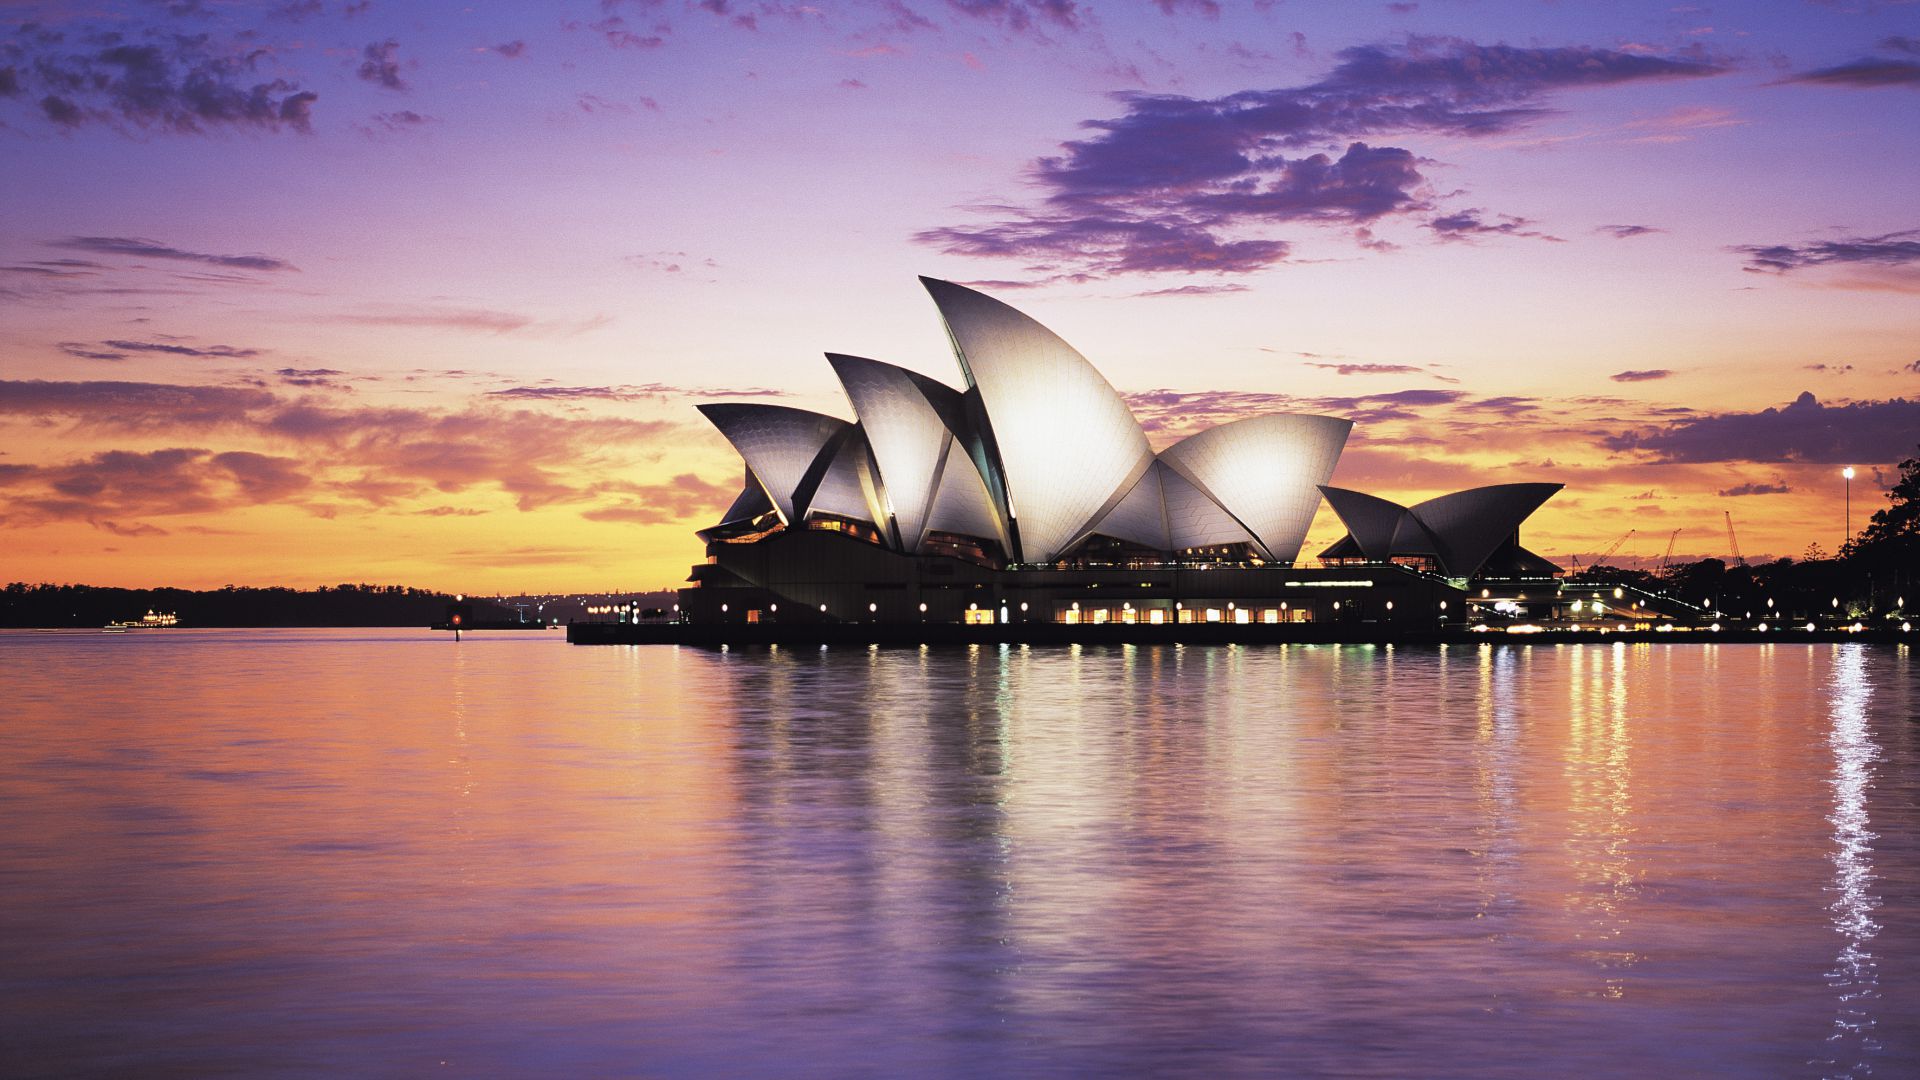 Оперный театр, Сидней, Австралия, Туризм, Путешествие, Opera house, sydney, australia, tourism, travel (horizontal)